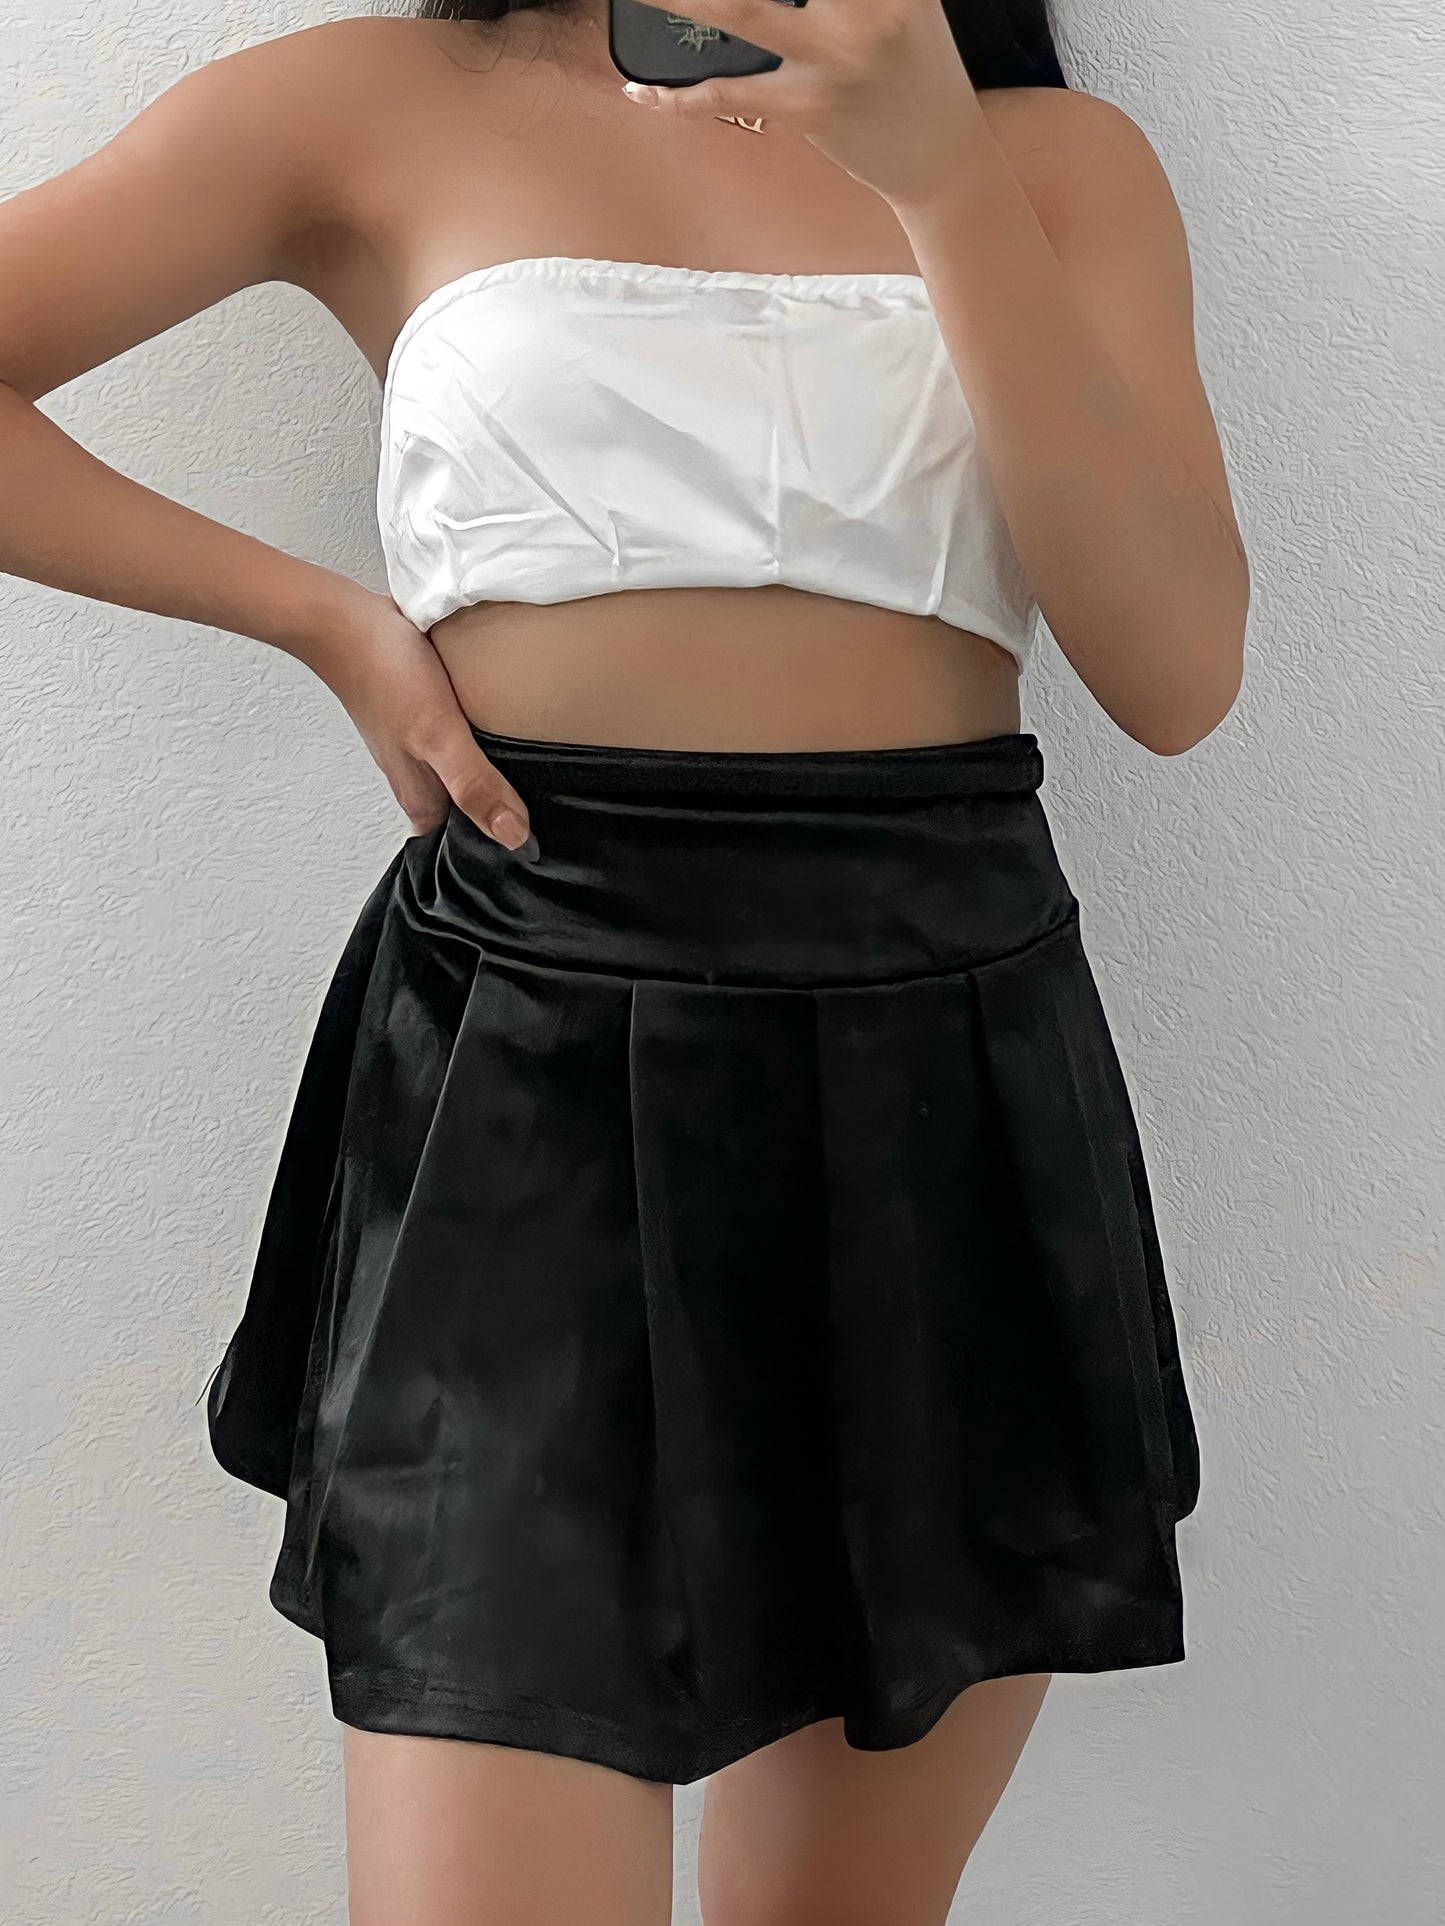 Match Skirt